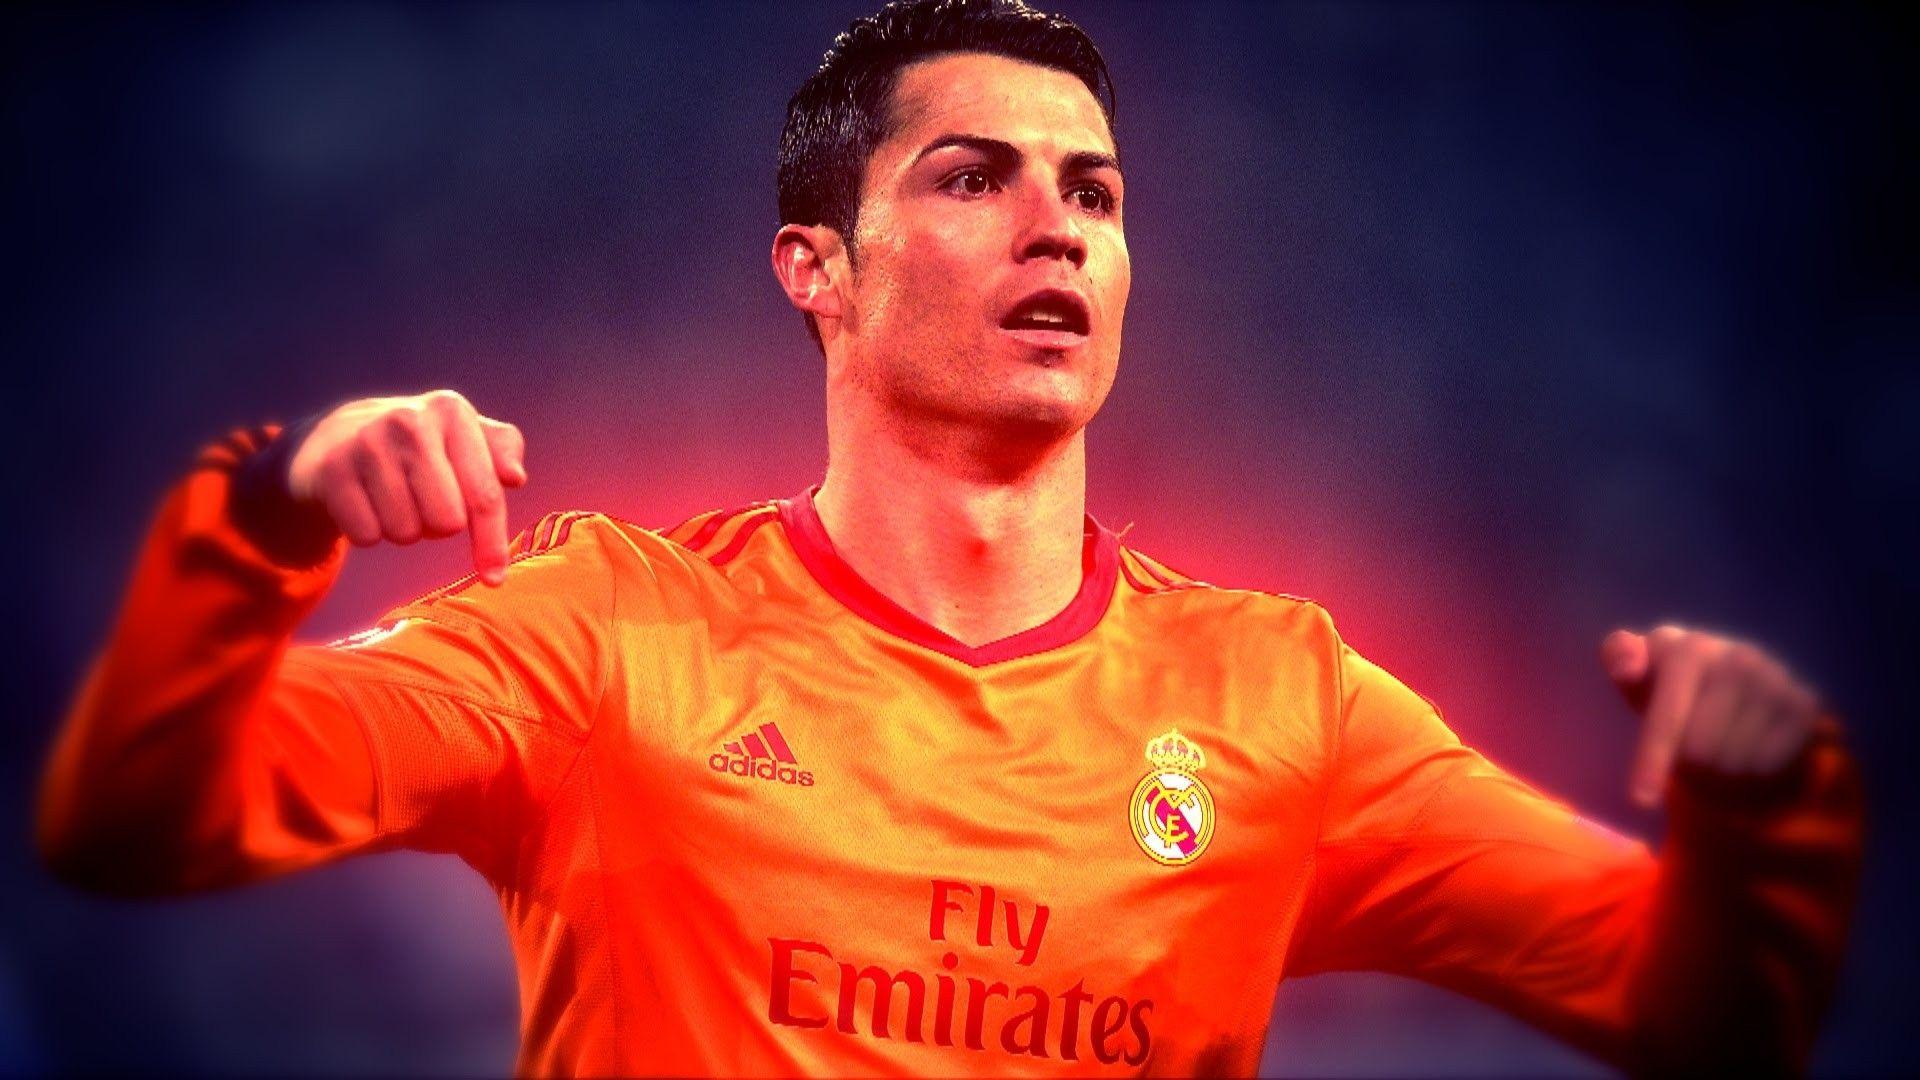 Best Cristiano Ronaldo Latest Image